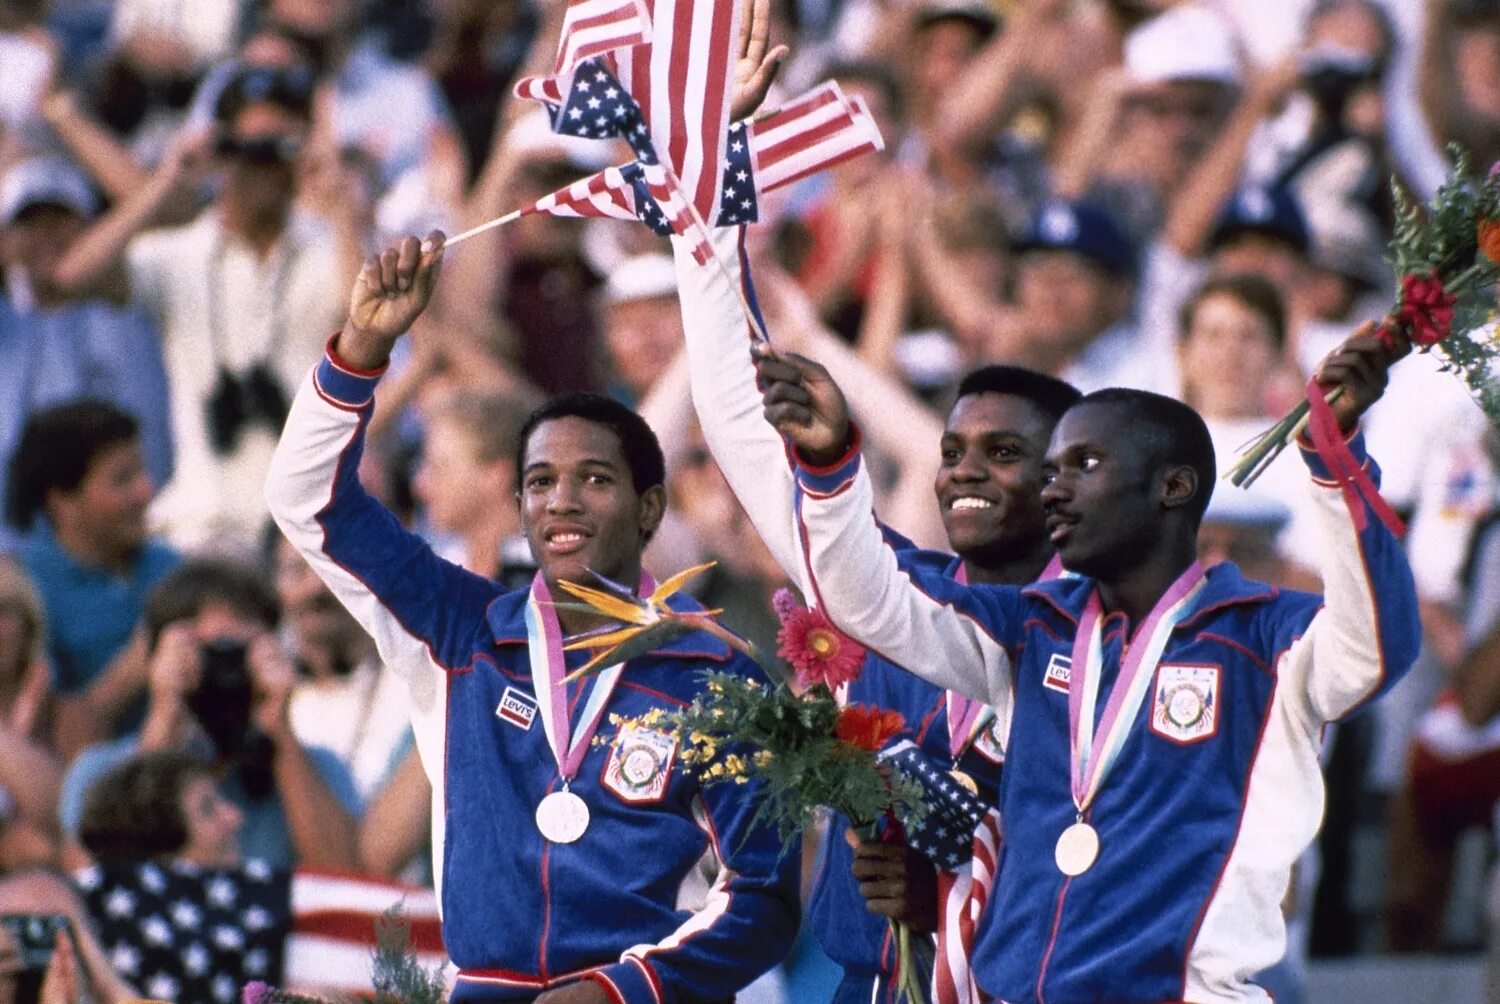 ОИ 1984. Los Angeles 1984. Olympic 1984. Лос Анджелес 1984 талисман.